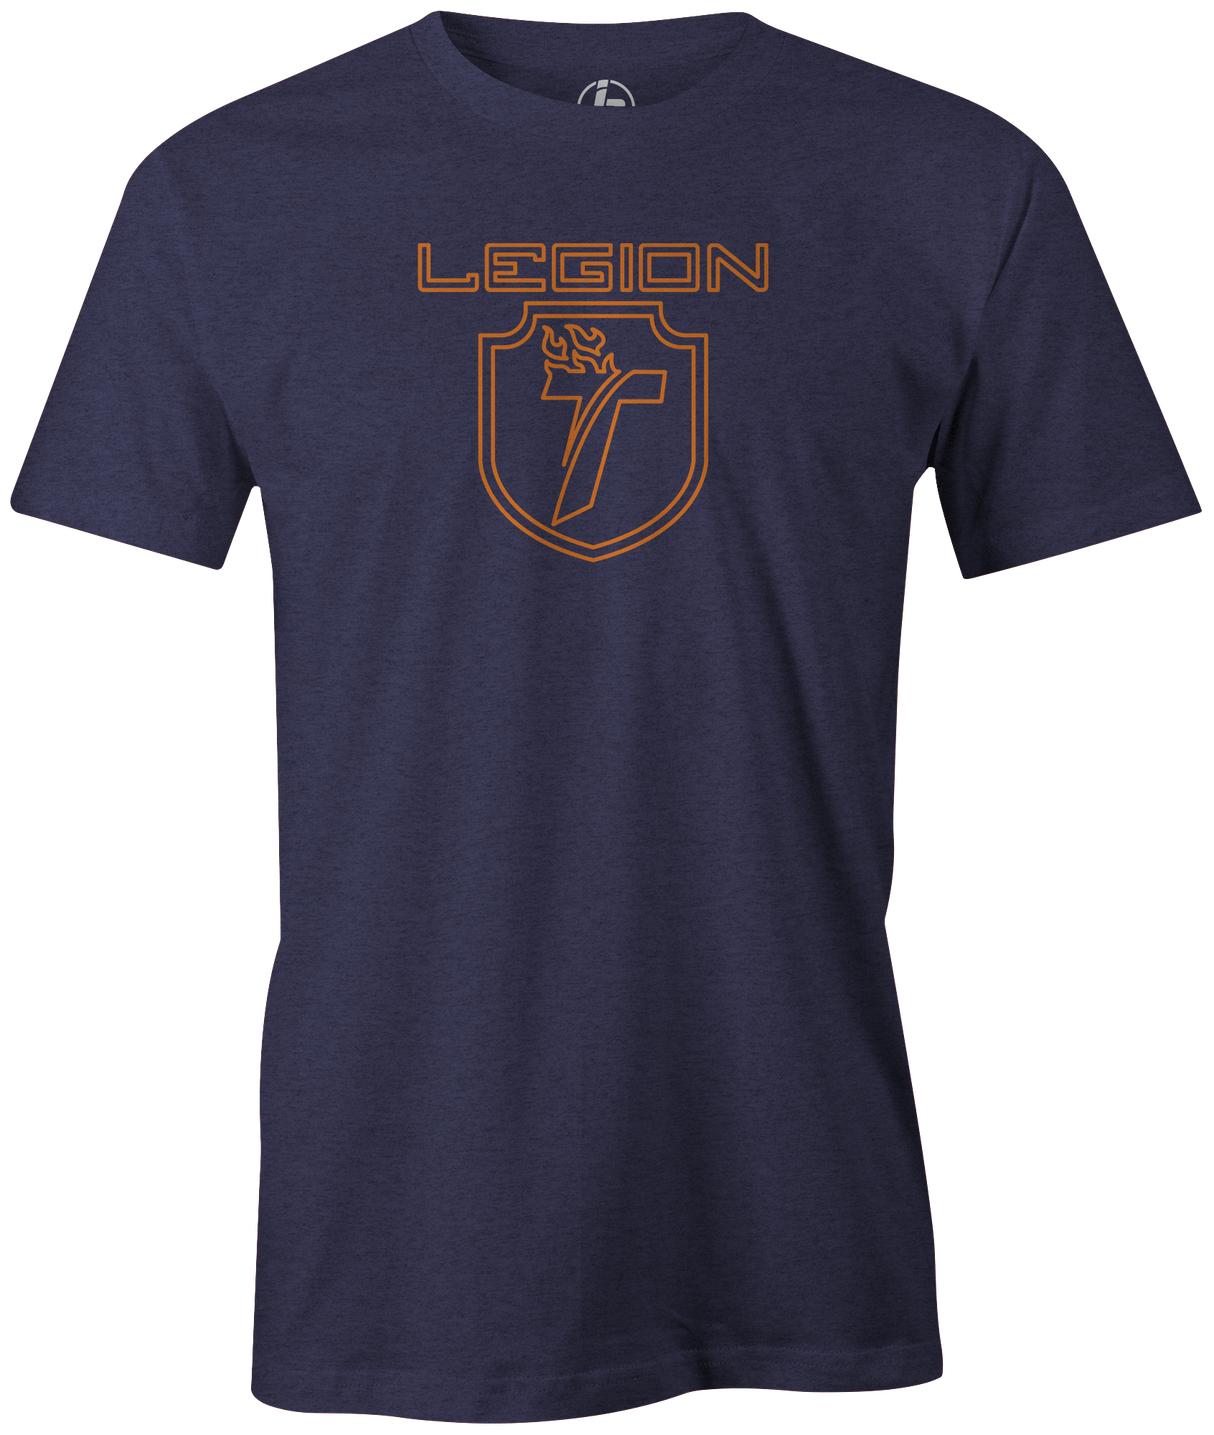 track-legion-pearl bowling ball logo tee shirt bowler tshirt